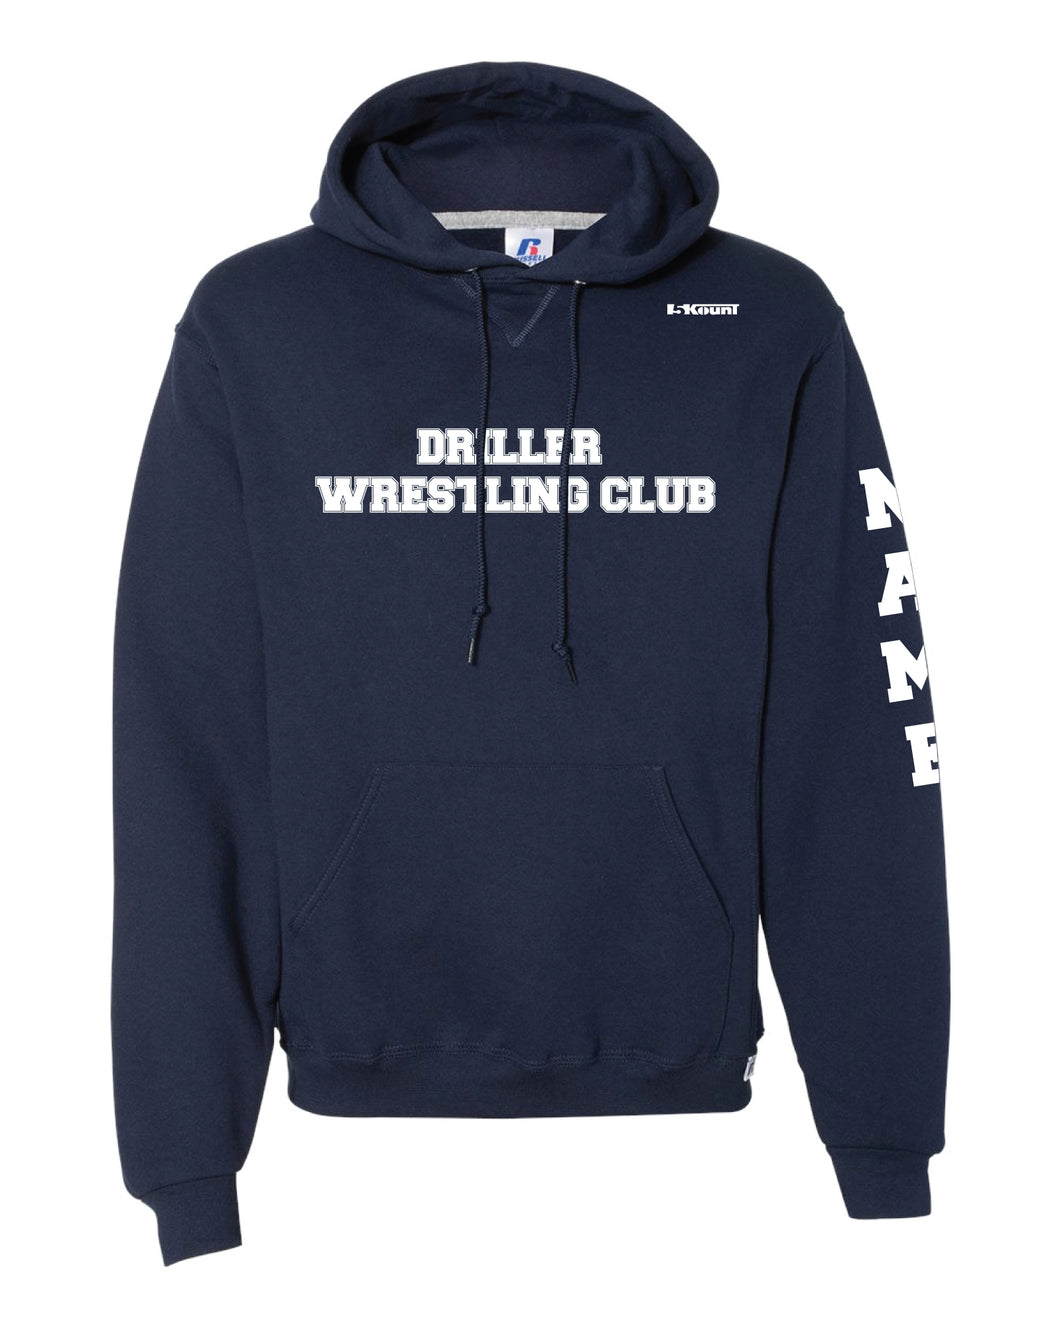 Driller Wrestling Club Cotton Hoodie - Navy - 5KounT